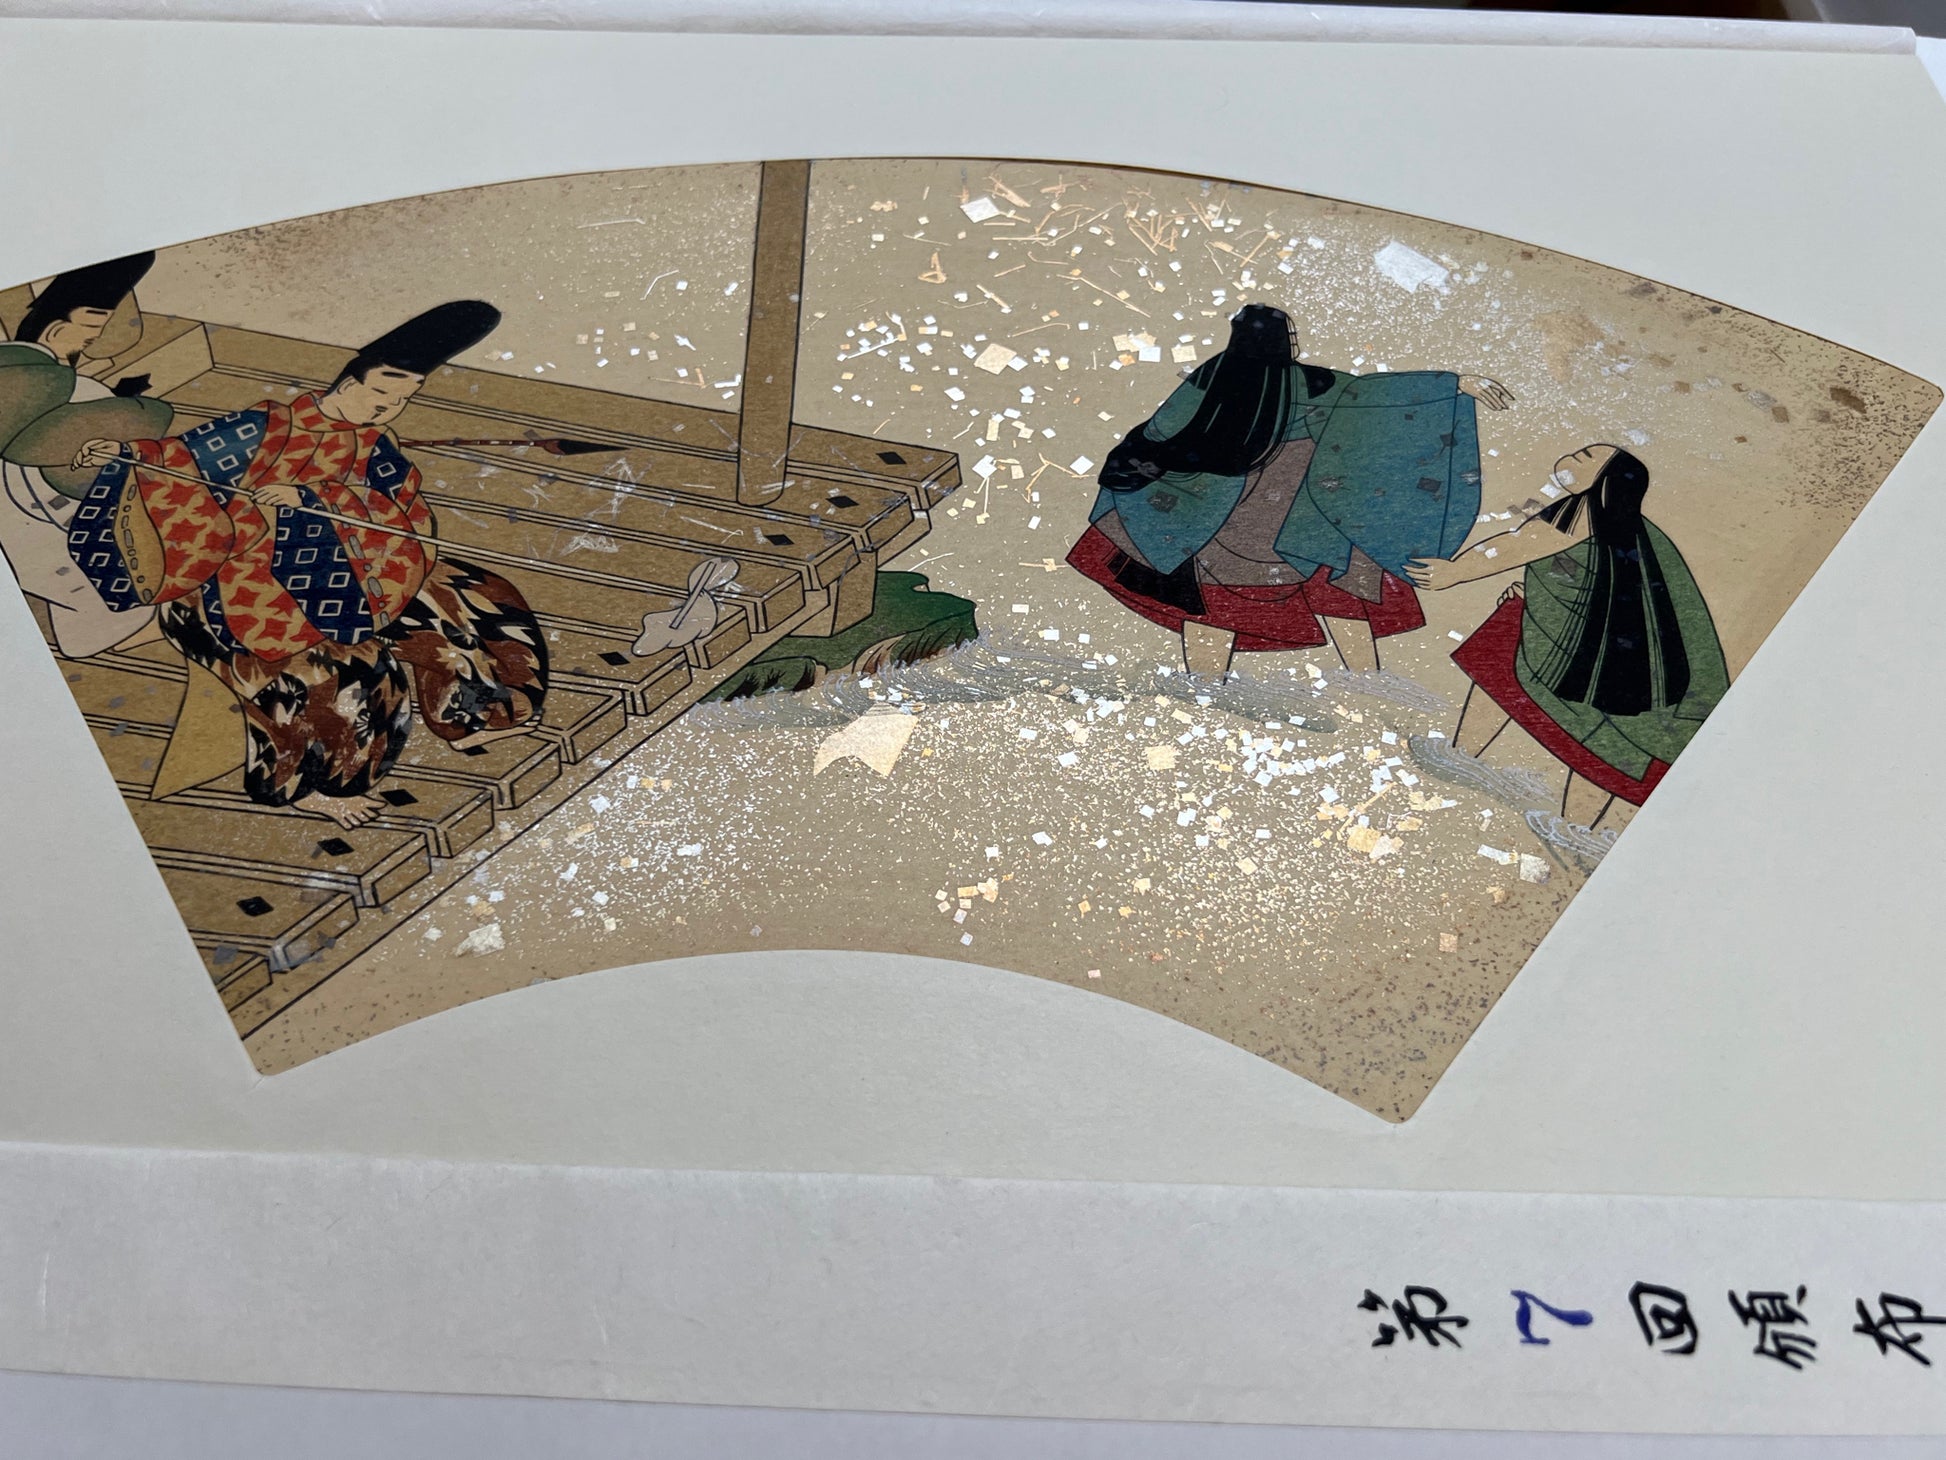 Estampe japonaise en forme d'éventail parsemée de fragments d'or et d'argent, deux hommes nettoient une terrasse au bord de l'eau pendant que deux femmes se baignent dans la rivière, série sutra du lotus n°7 écrit en japonais dans le coin inférieur droit.